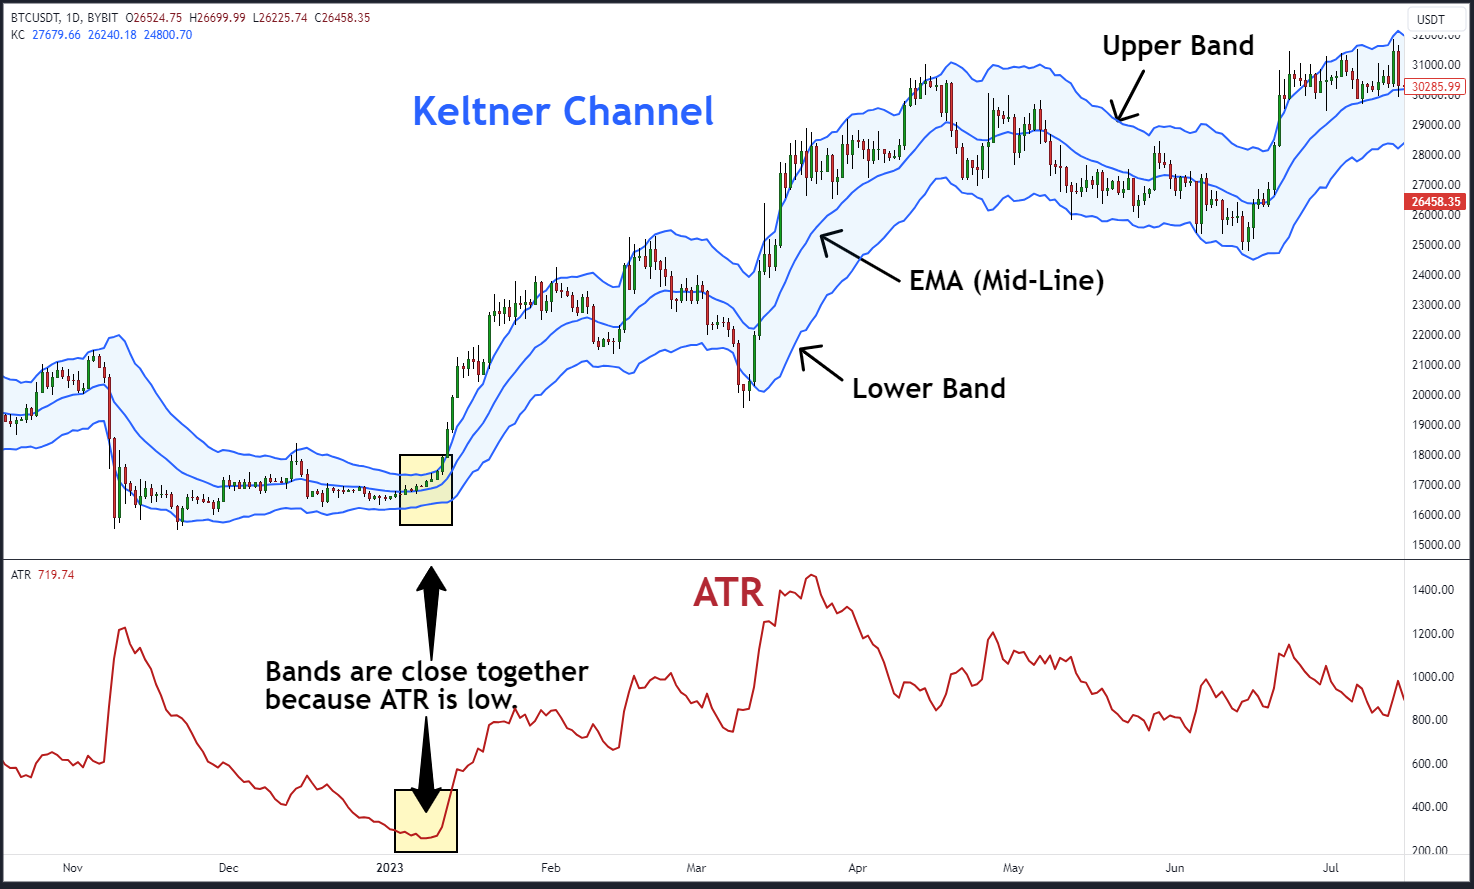 Keltner Channel and ATR bands